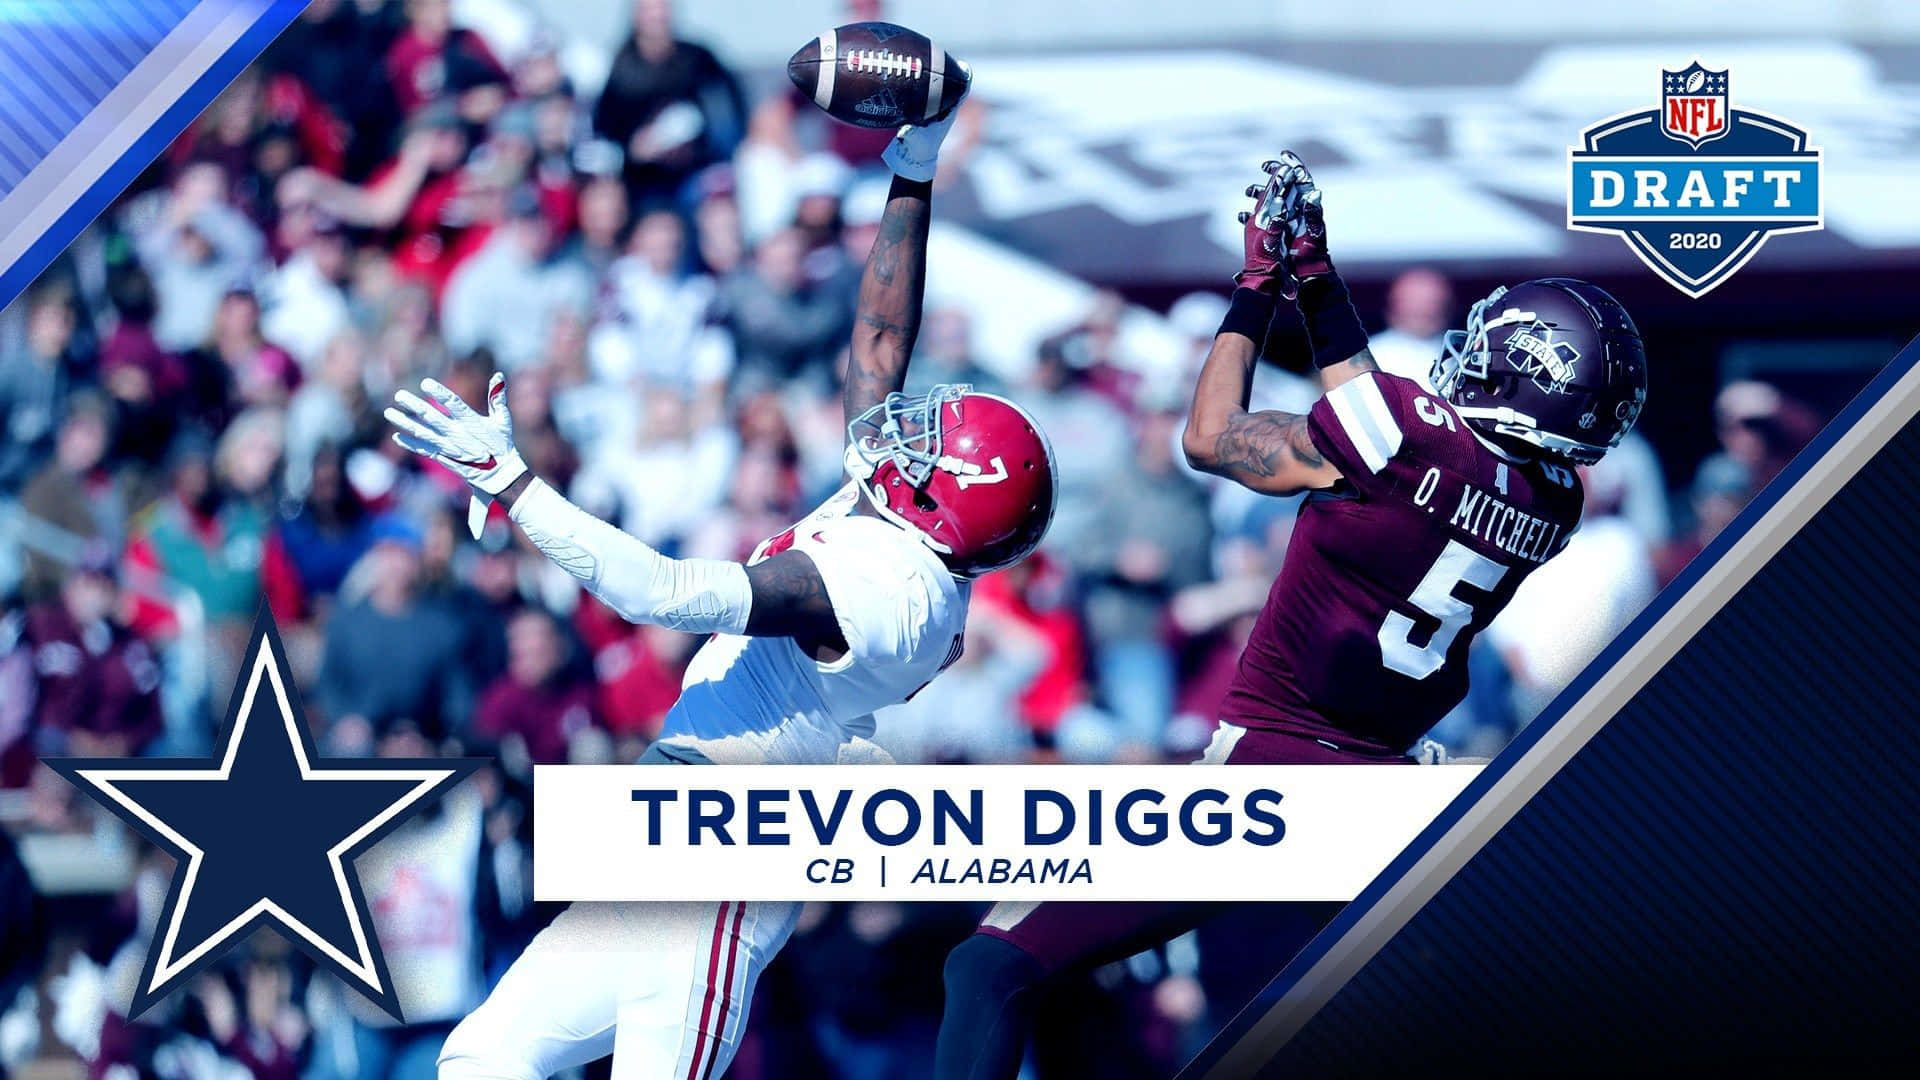 Download Trevon Diggs - Dallas Cowboys cornerback Wallpaper